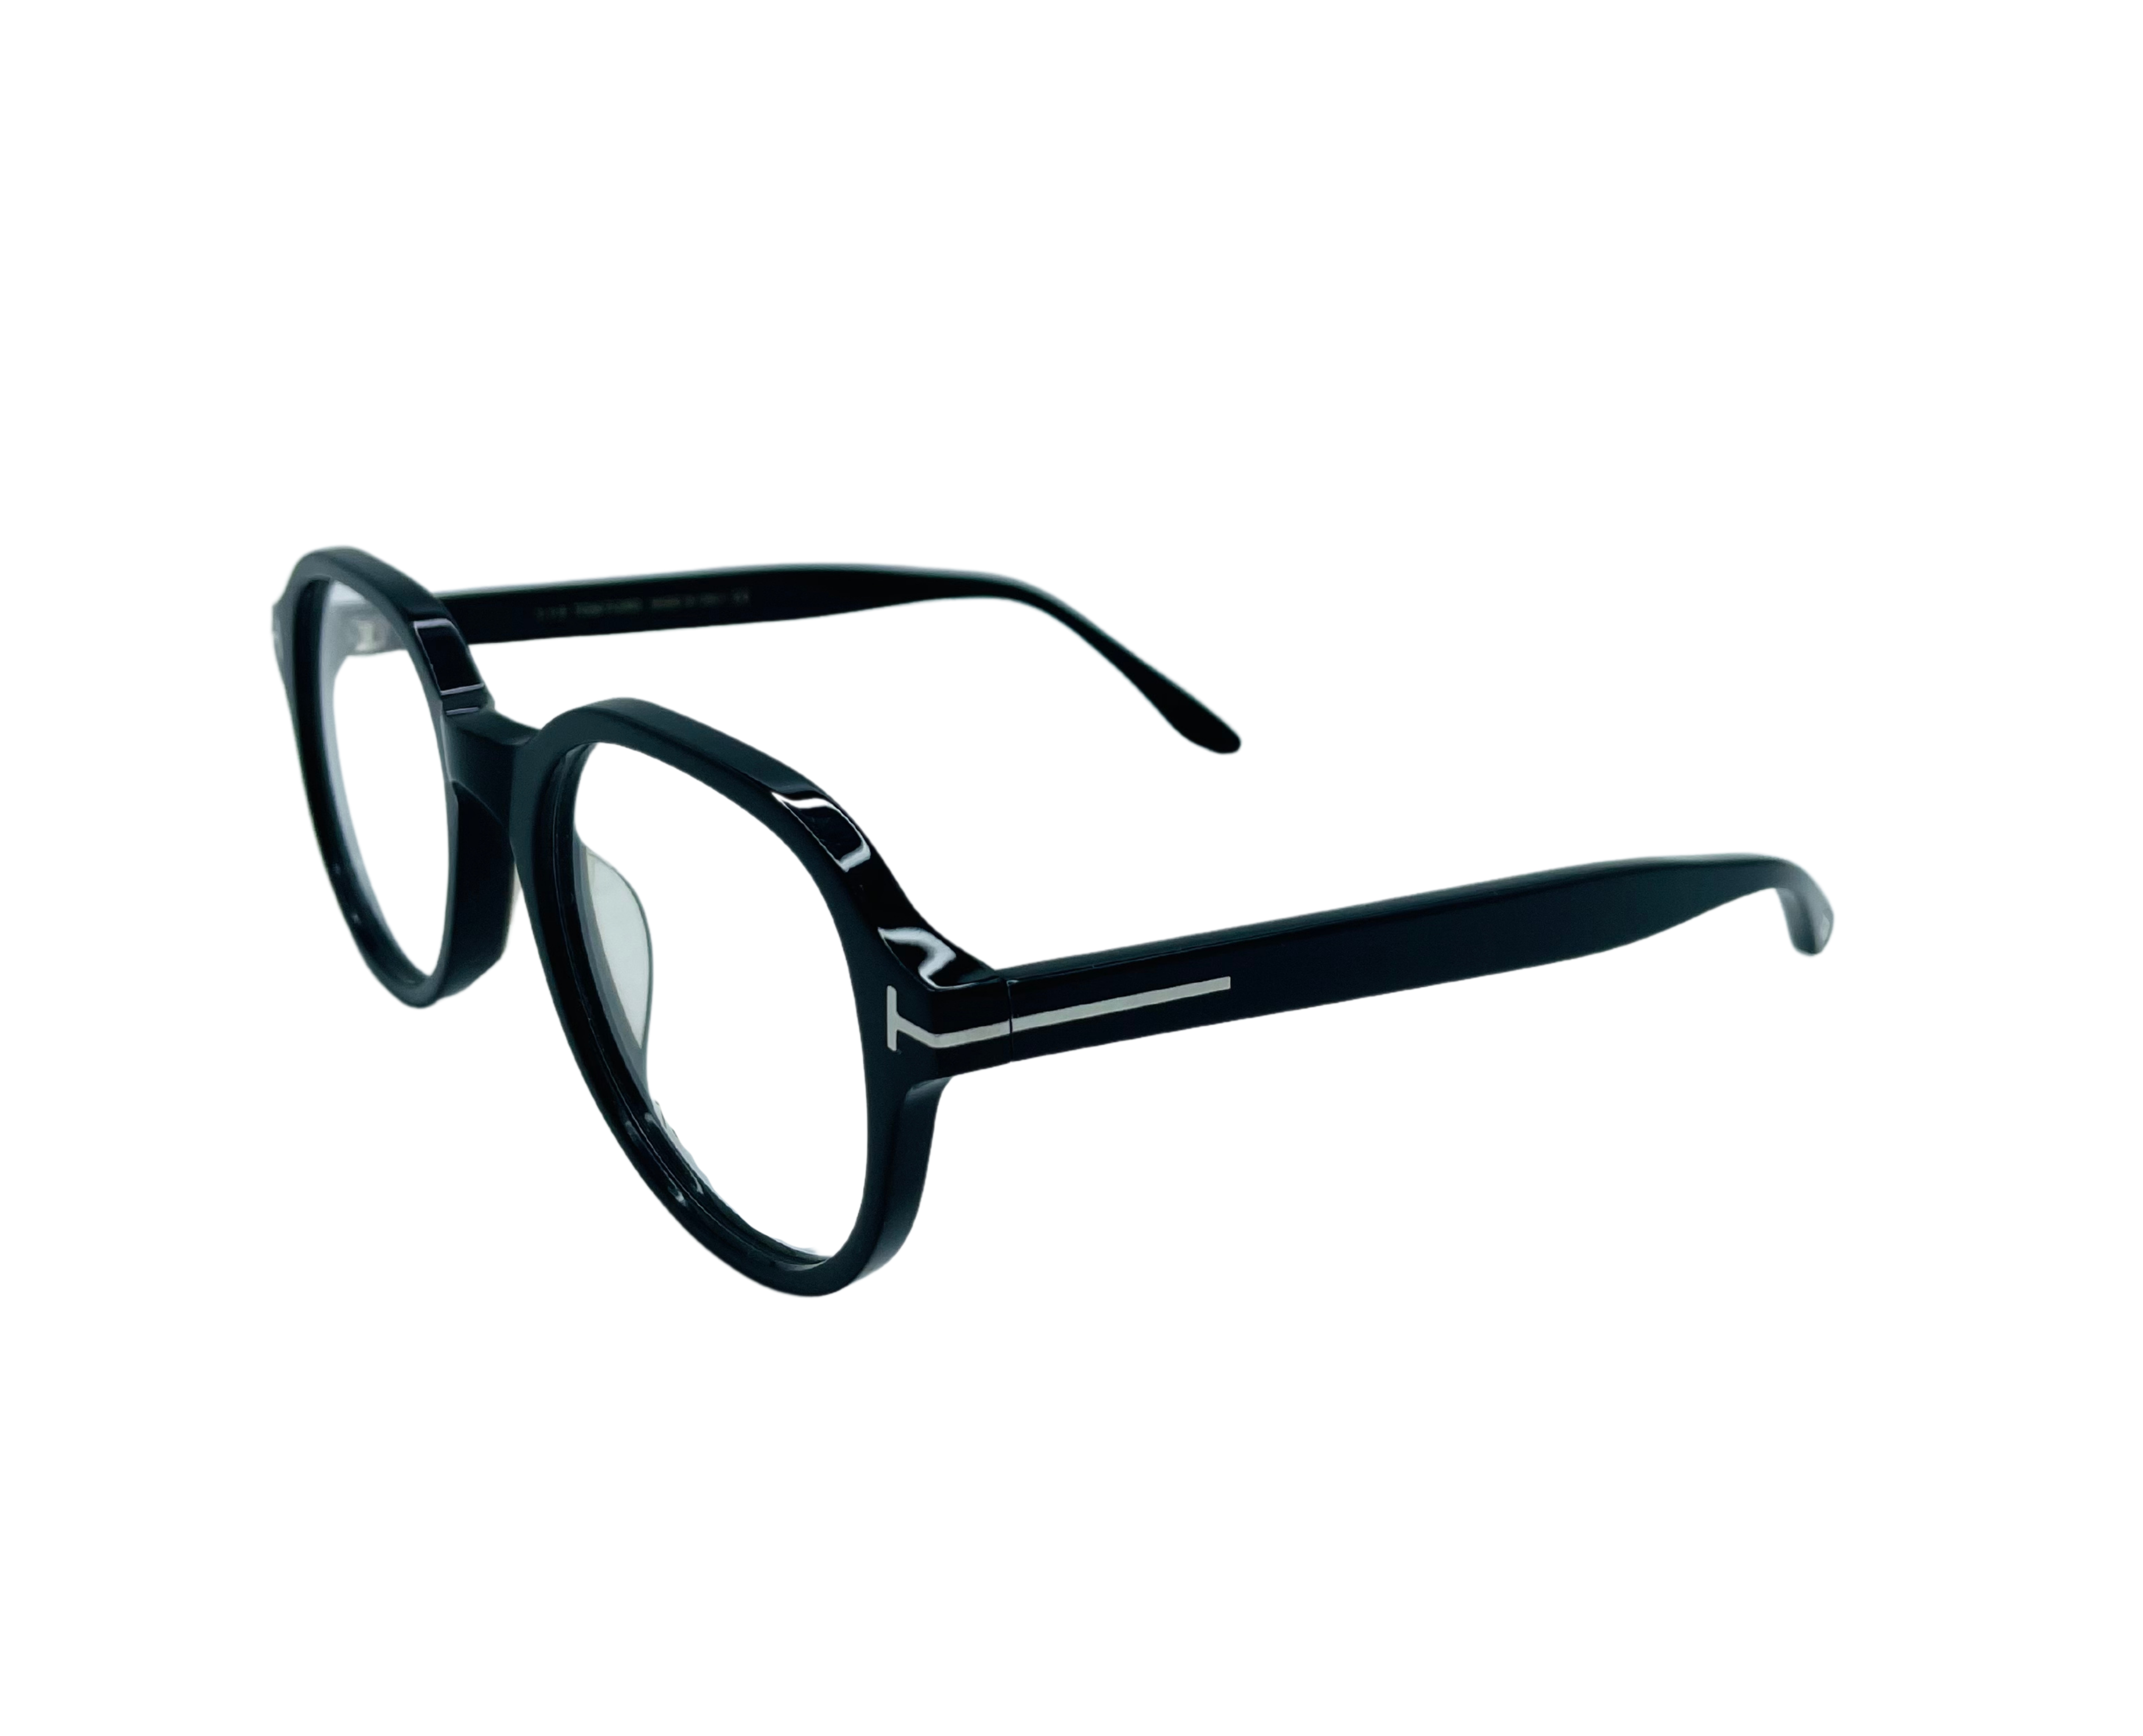 NS Luxury - 5697 - Black - Eyeglasses